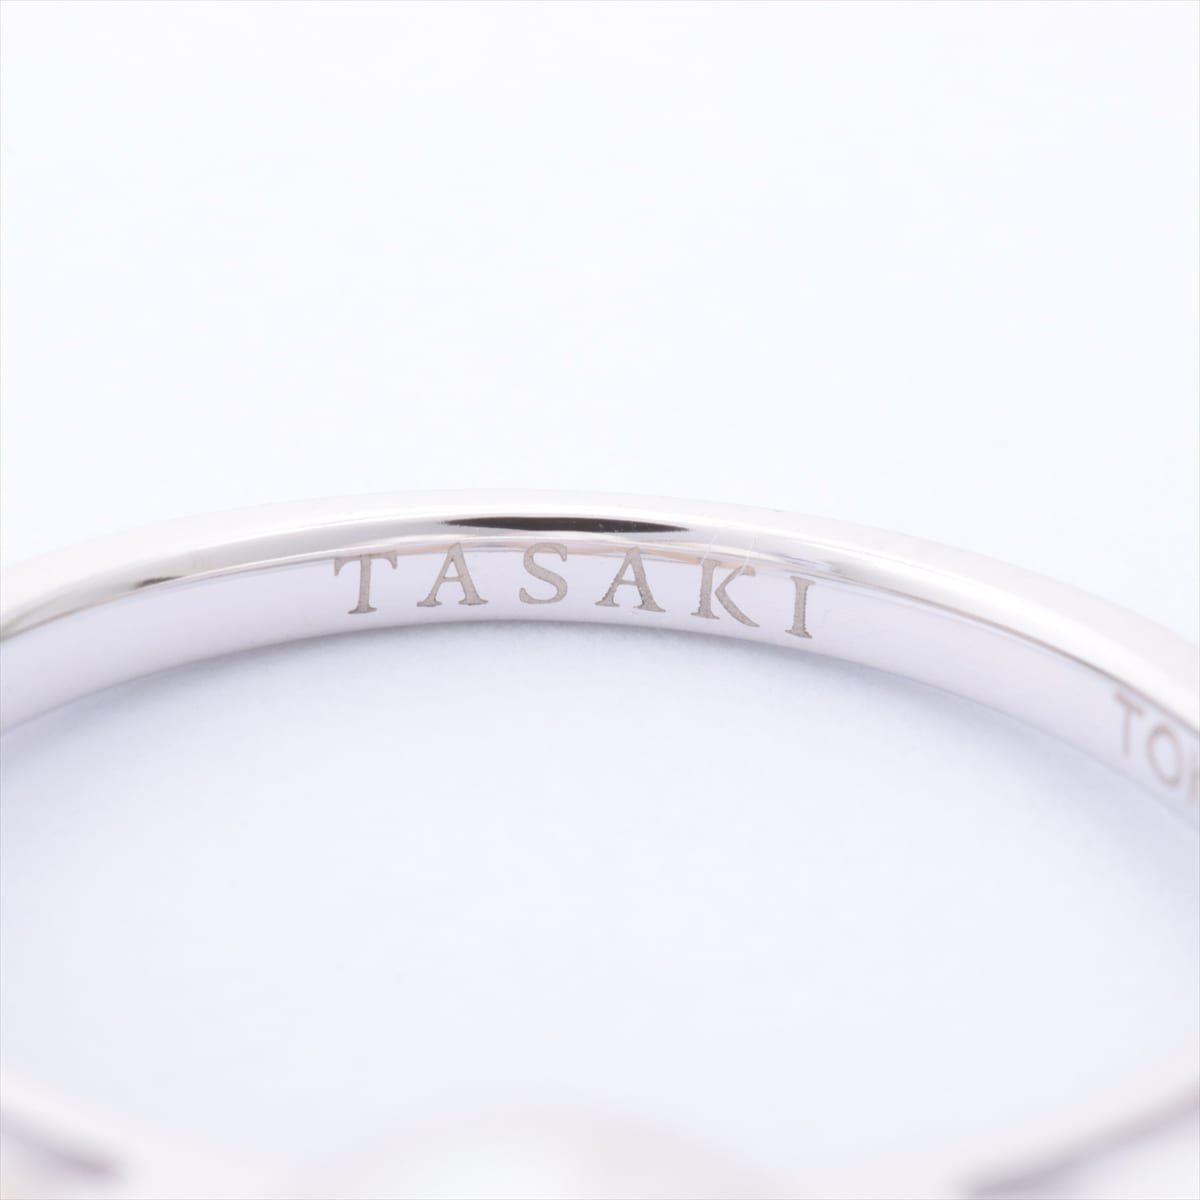 TASAKI TASAKI Balance Era rings 750WG #9